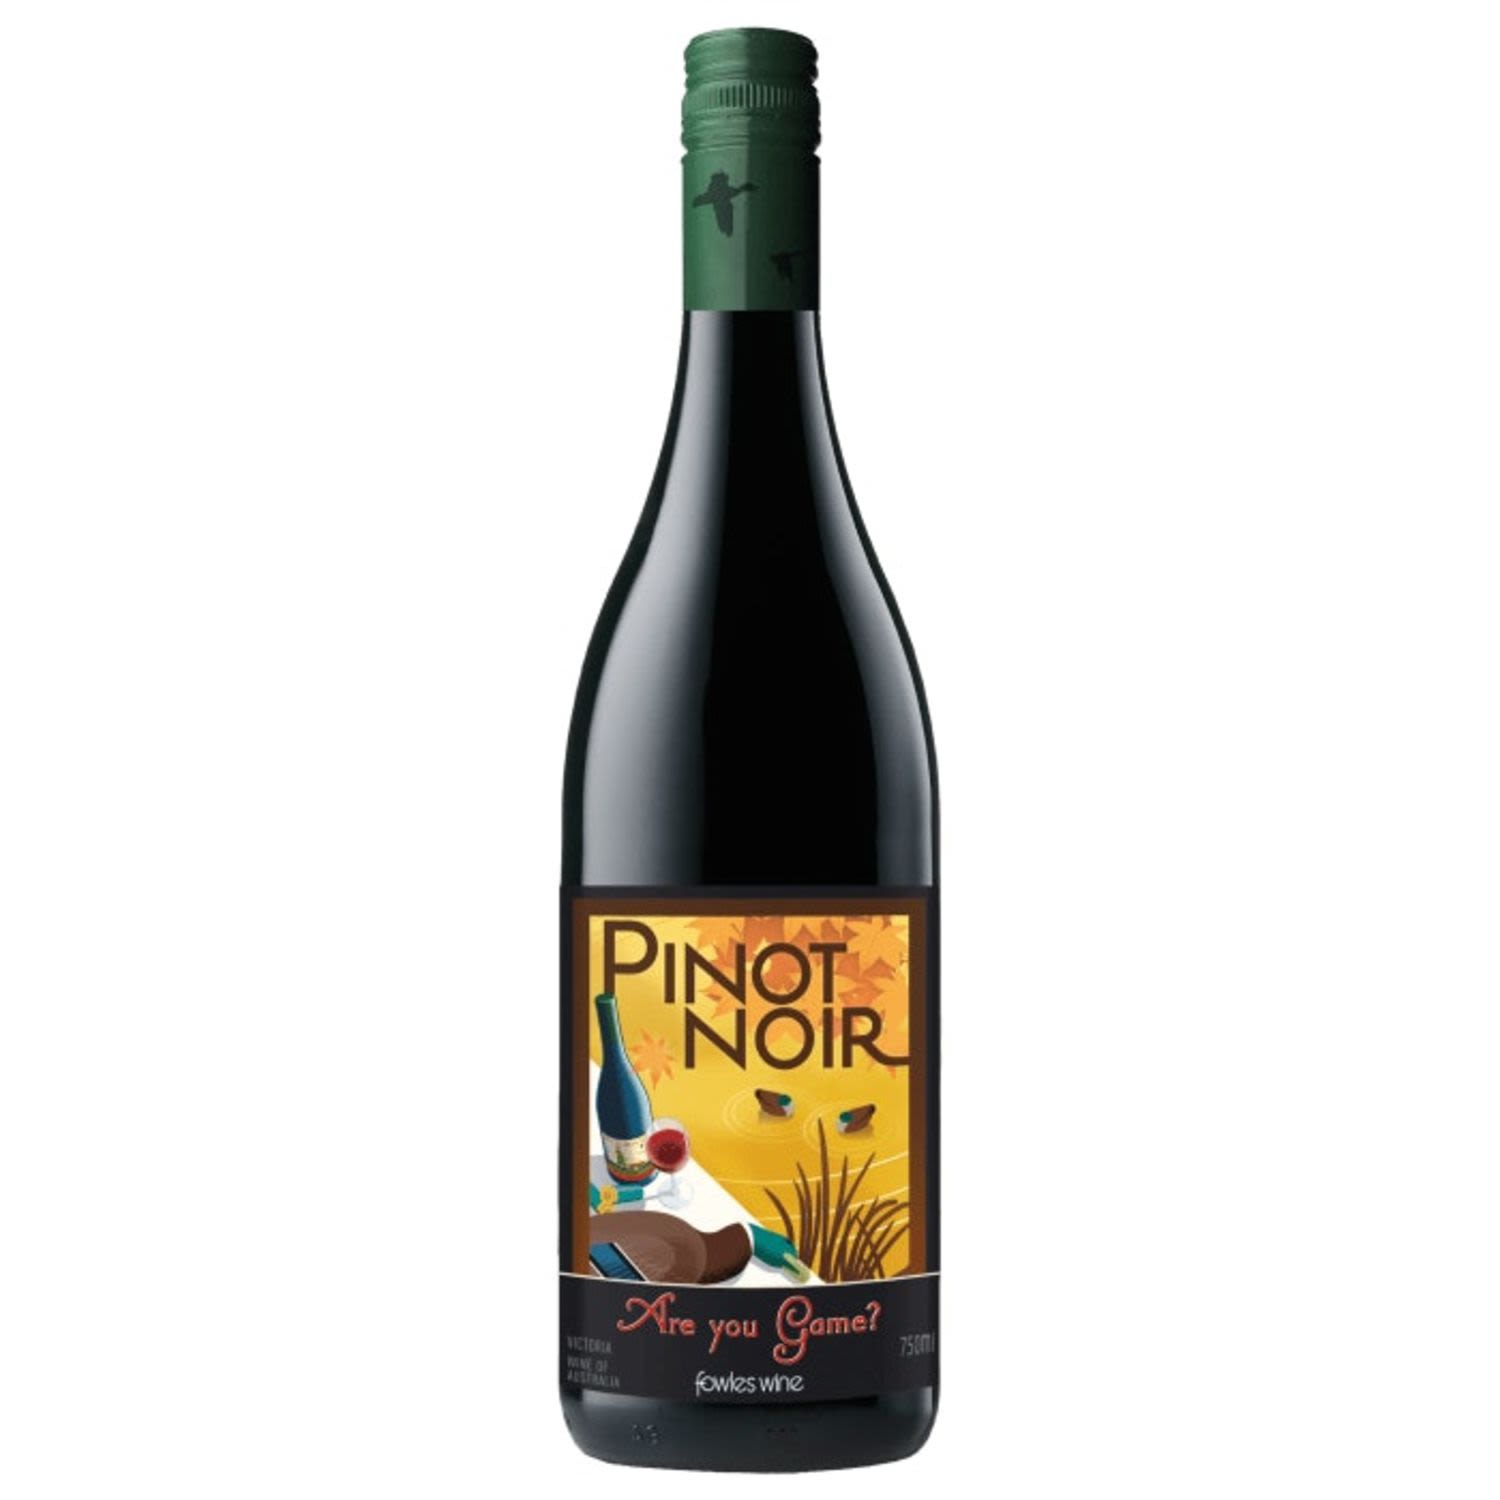 Fowles Wine Are You Game? Pinot Noir<br /> <br />Alcohol Volume: 13.50%<br /><br />Pack Format: Bottle<br /><br />Standard Drinks: 8</br /><br />Pack Type: Bottle<br /><br />Country of Origin: Australia<br /><br />Region: n/a<br /><br />Vintage: '2017<br />